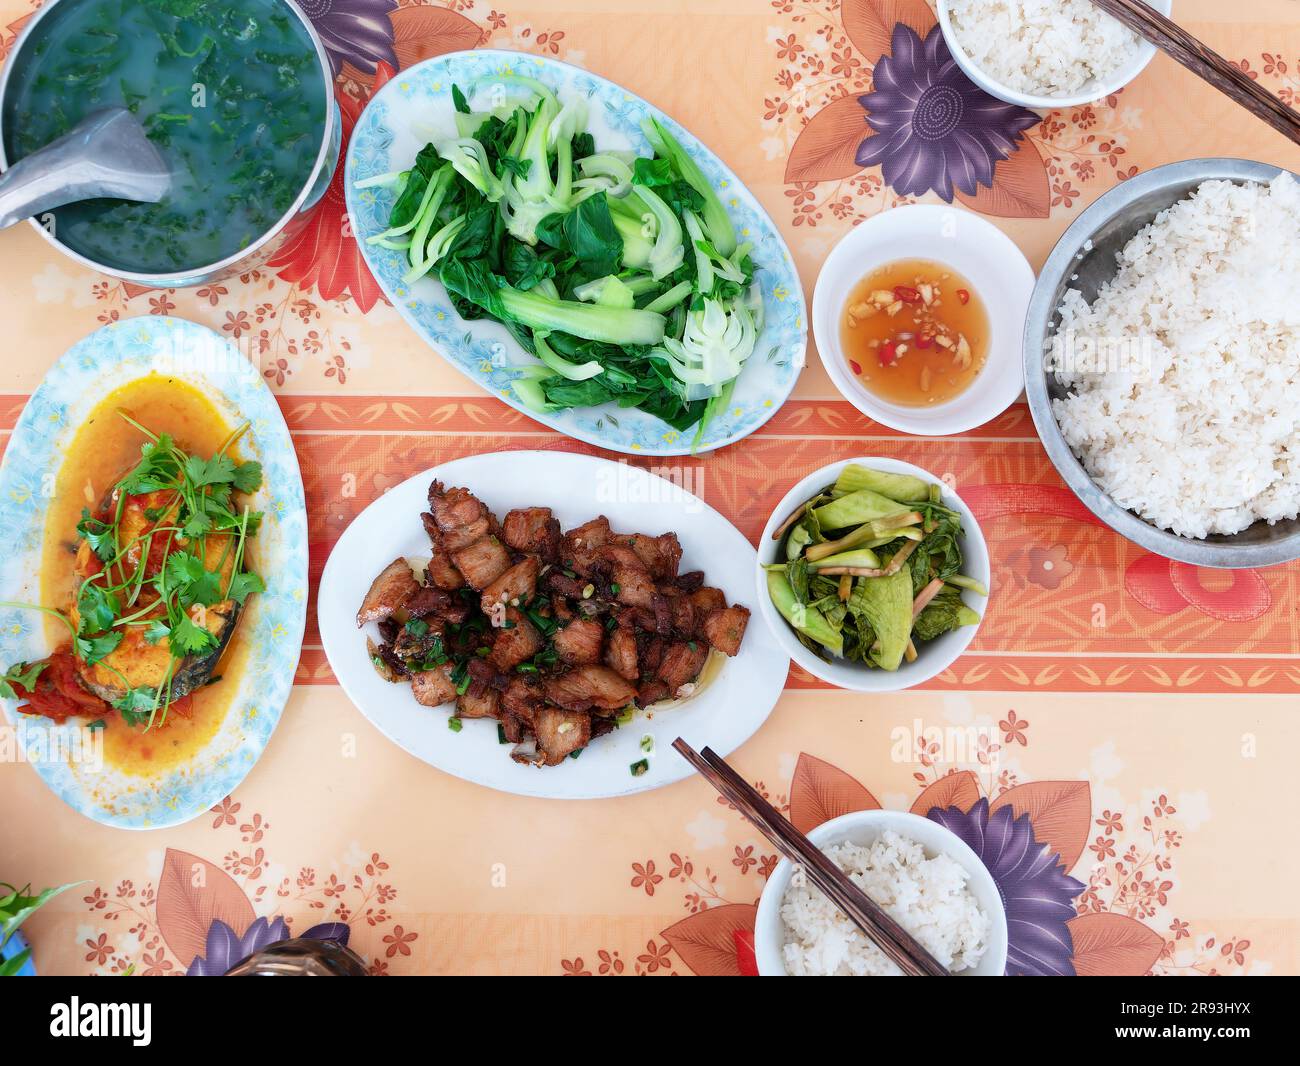 Table de déjeuner pour deux personnes dans un restaurant local à Thanh Hoa, Vietnam, avec riz, légumes, poisson, viande, condiments et soupe. Banque D'Images